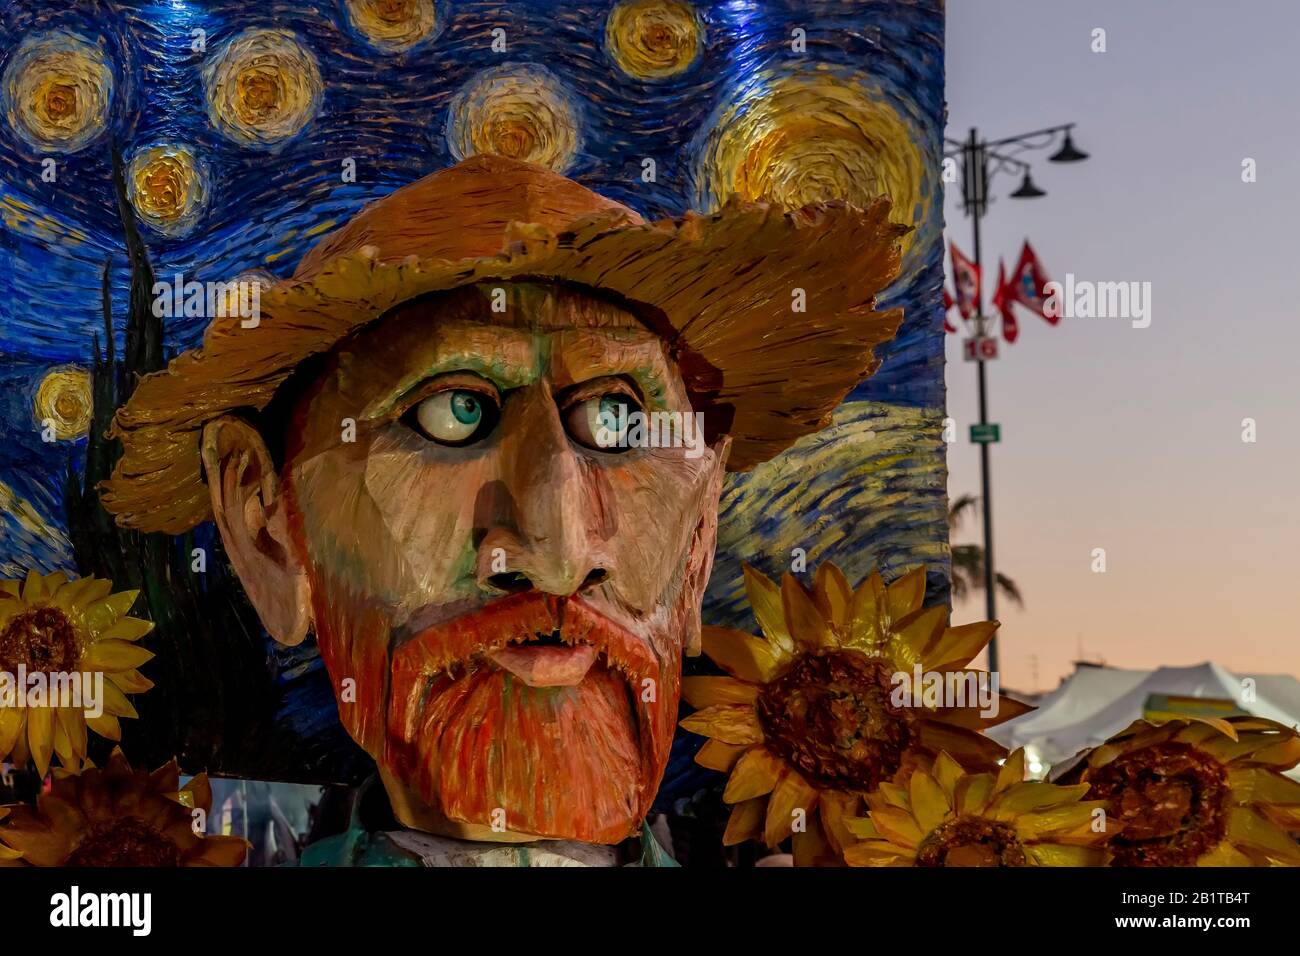 Représentation de Vincent Van Gogh et de la célèbre peinture "nuit de la Tarry" au Carnaval de Viareggio, Italie Banque D'Images